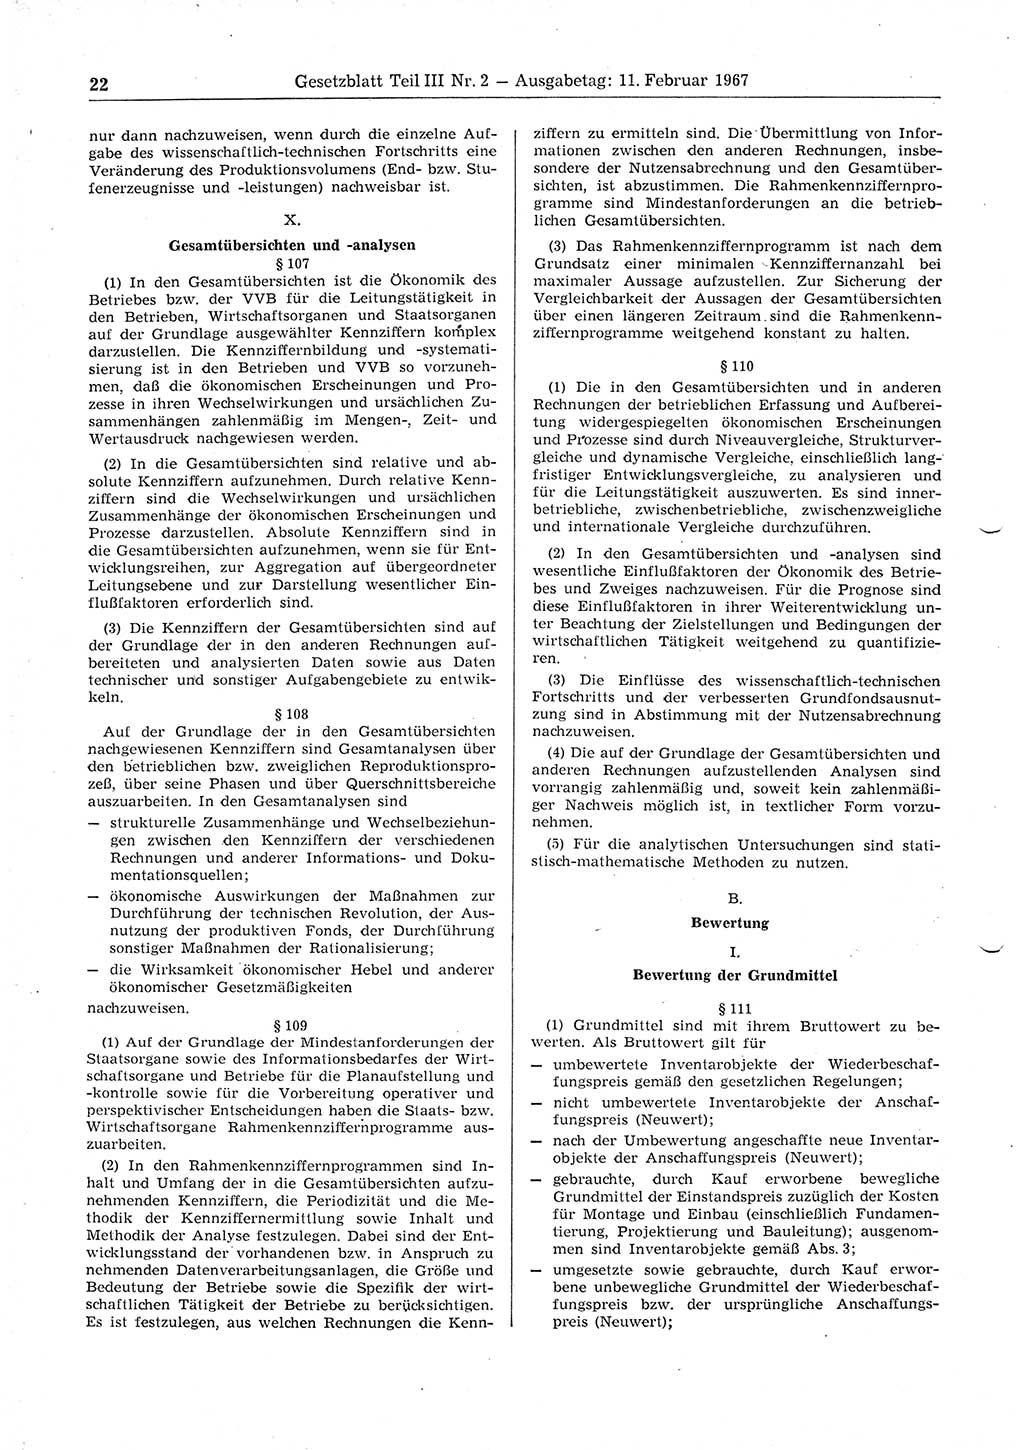 Gesetzblatt (GBl.) der Deutschen Demokratischen Republik (DDR) Teil ⅠⅠⅠ 1967, Seite 22 (GBl. DDR ⅠⅠⅠ 1967, S. 22)